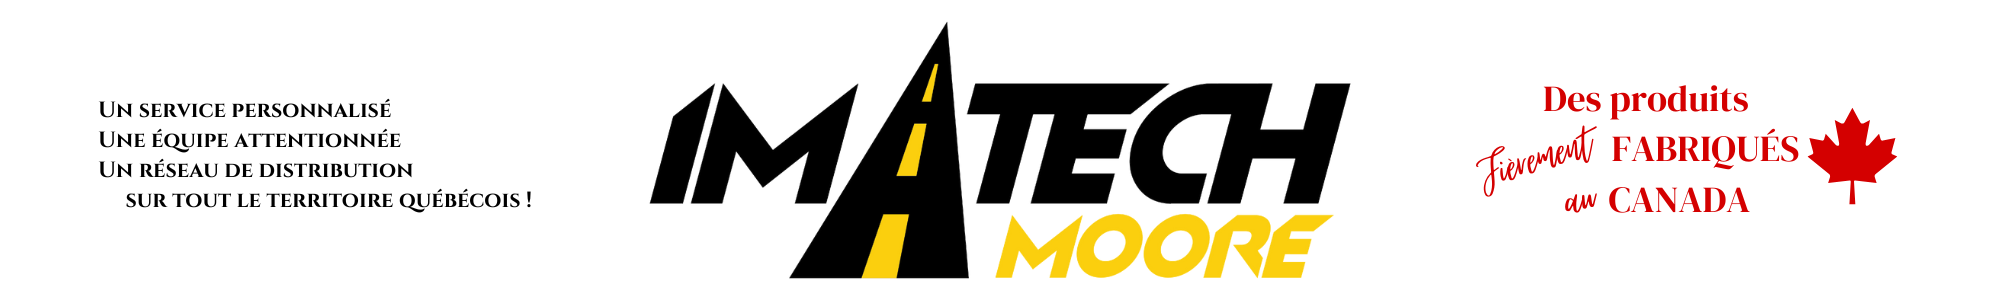 Imatech-Moore